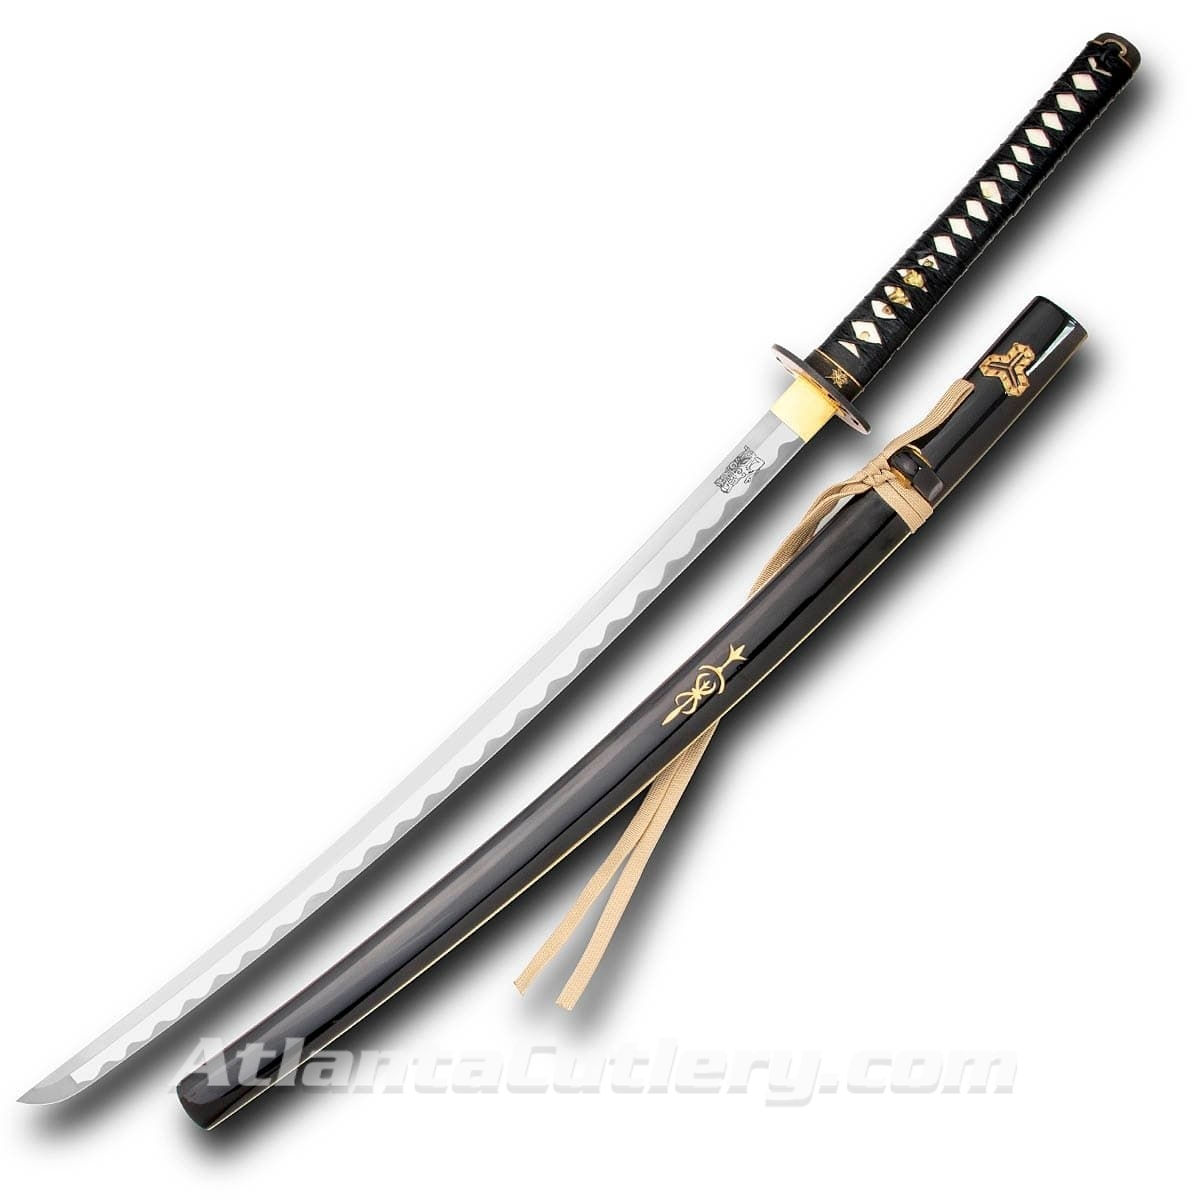 Hattori Hanzo Bride Sword with Saya Lacquered Scabbard